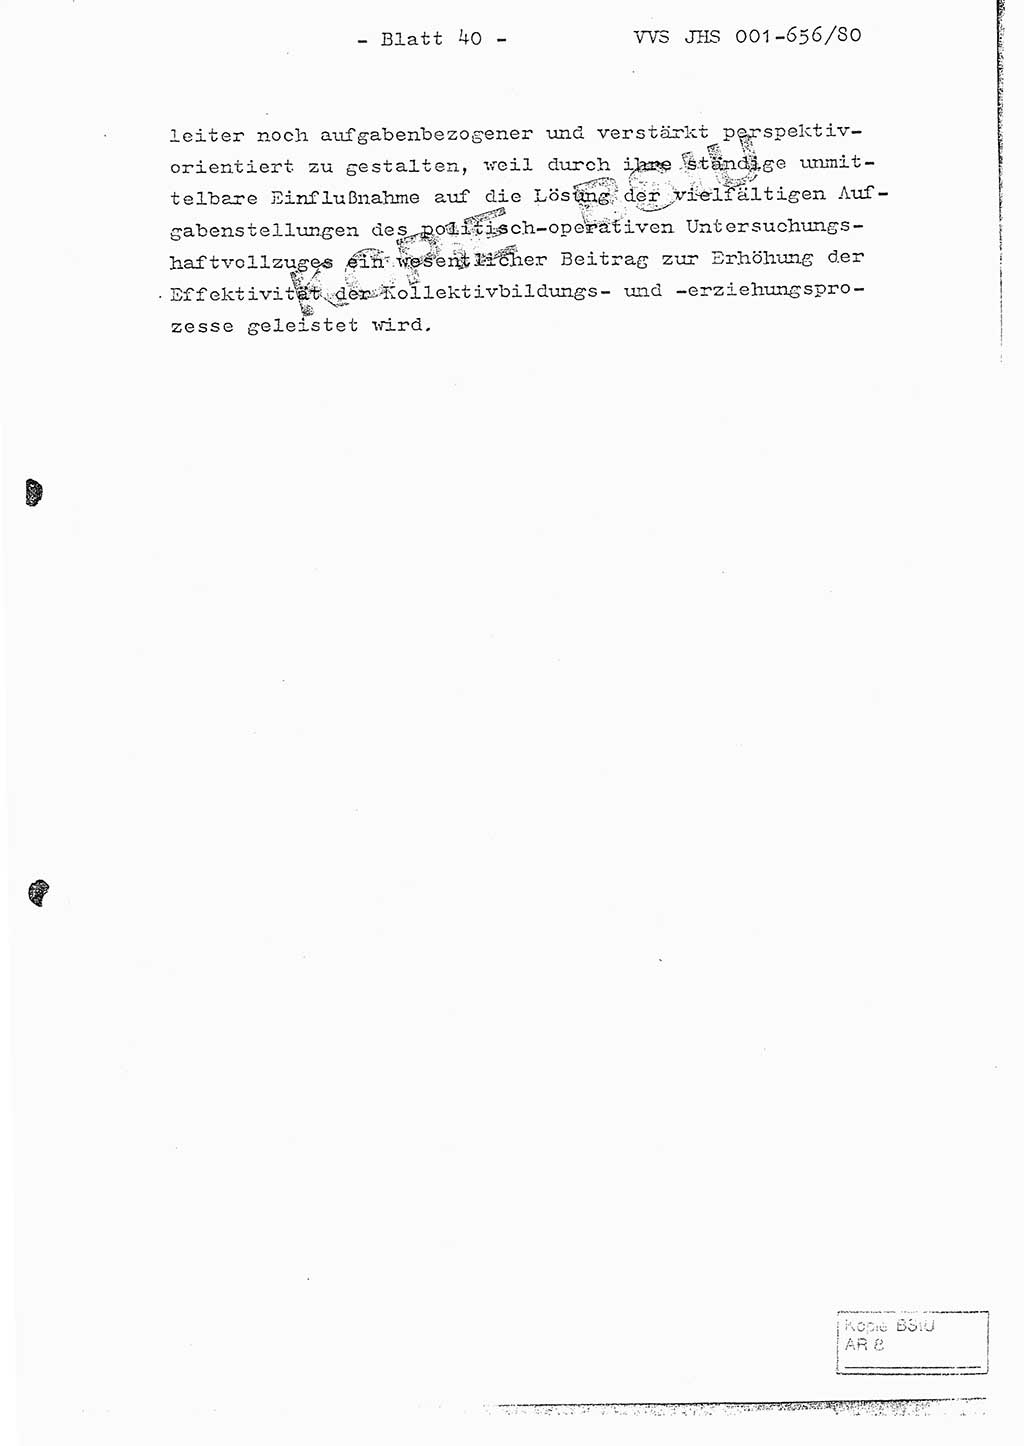 Fachschulabschlußarbeit Unterleutnant Christian Kätzel (Abt. ⅩⅣ), Ministerium für Staatssicherheit (MfS) [Deutsche Demokratische Republik (DDR)], Juristische Hochschule (JHS), Vertrauliche Verschlußsache (VVS) 001-656/80, Potsdam 1980, Blatt 40 (FS-Abschl.-Arb. MfS DDR JHS VVS 001-656/80 1980, Bl. 40)